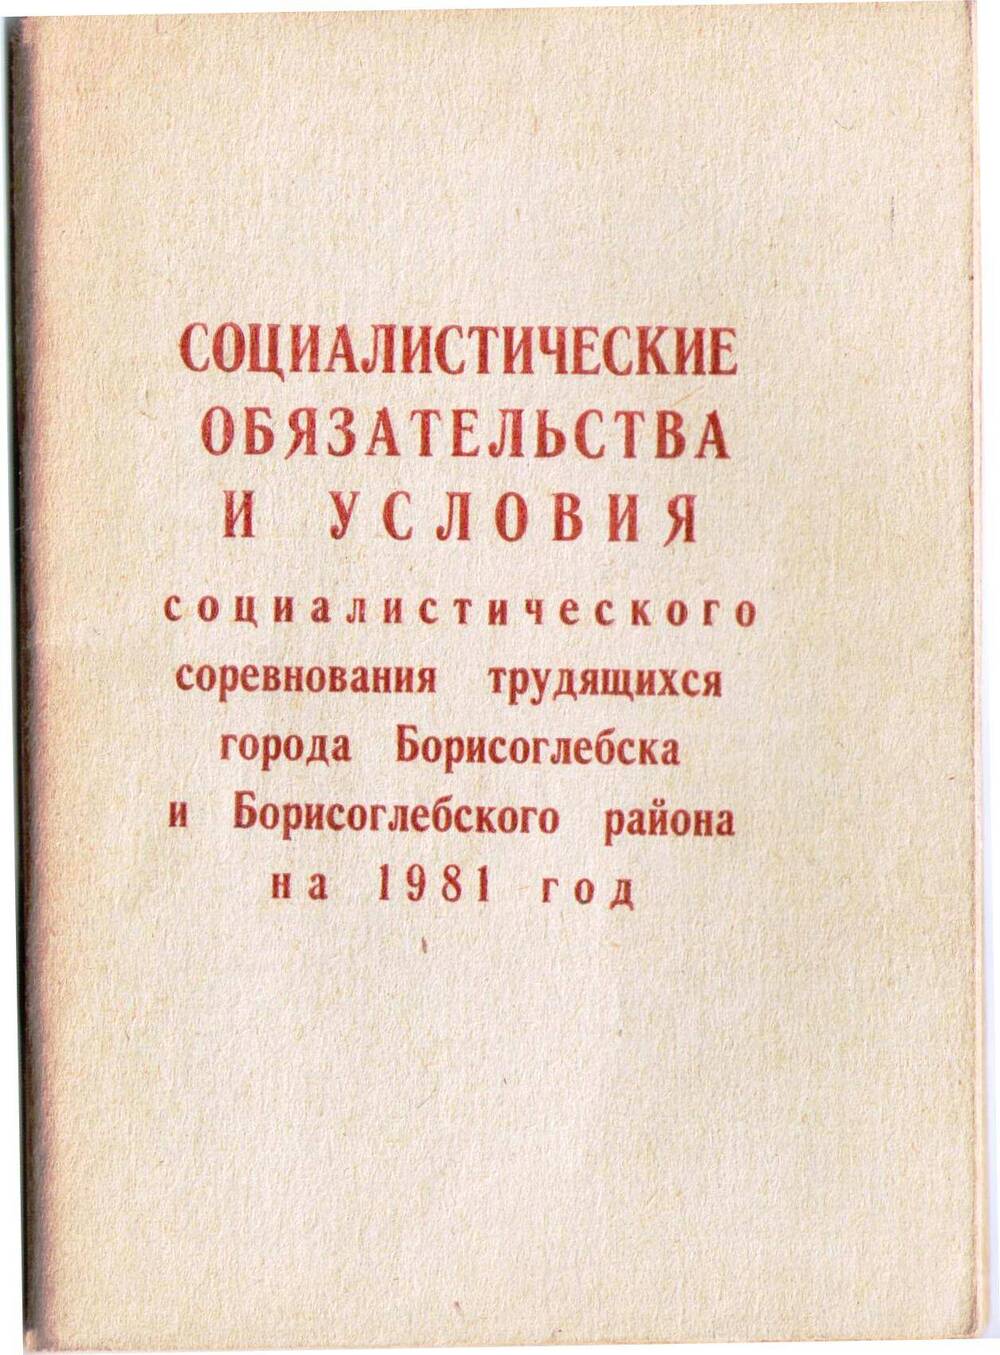 Книга Социалистические обязательства и условия социалистического соревнования трудящихся города Борисоглебска и Борисоглебского района на 1981 год.